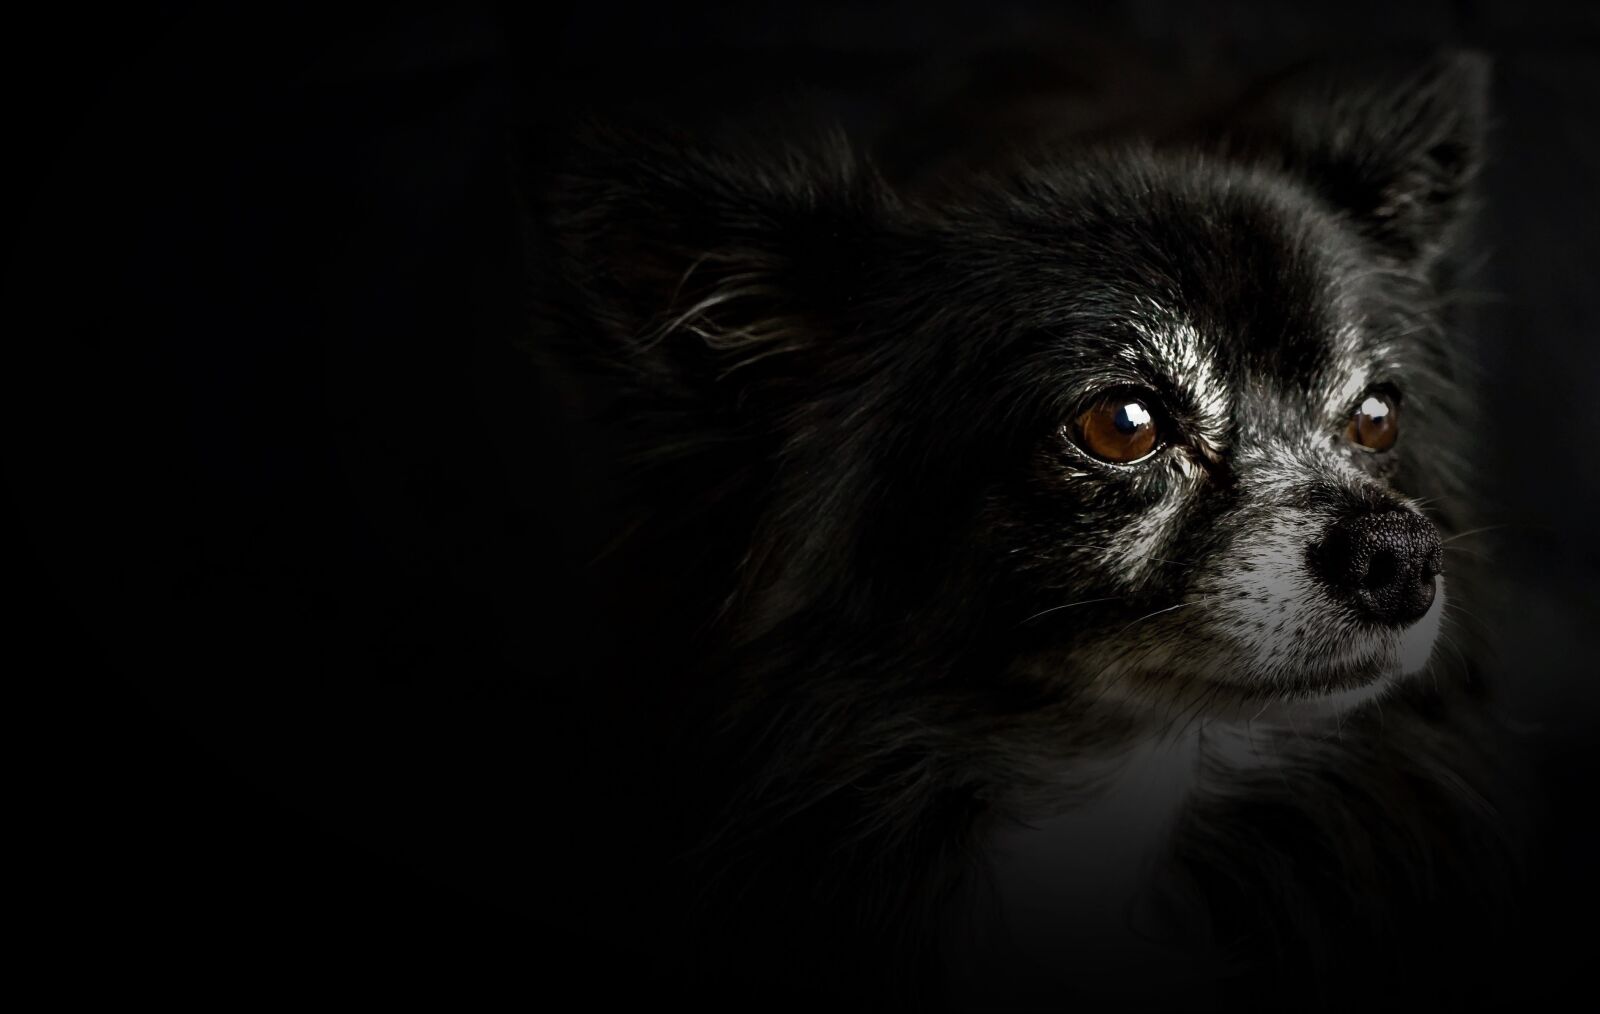 Sony E 30mm F3.5 Macro sample photo. Chihuahua, small dog, black photography